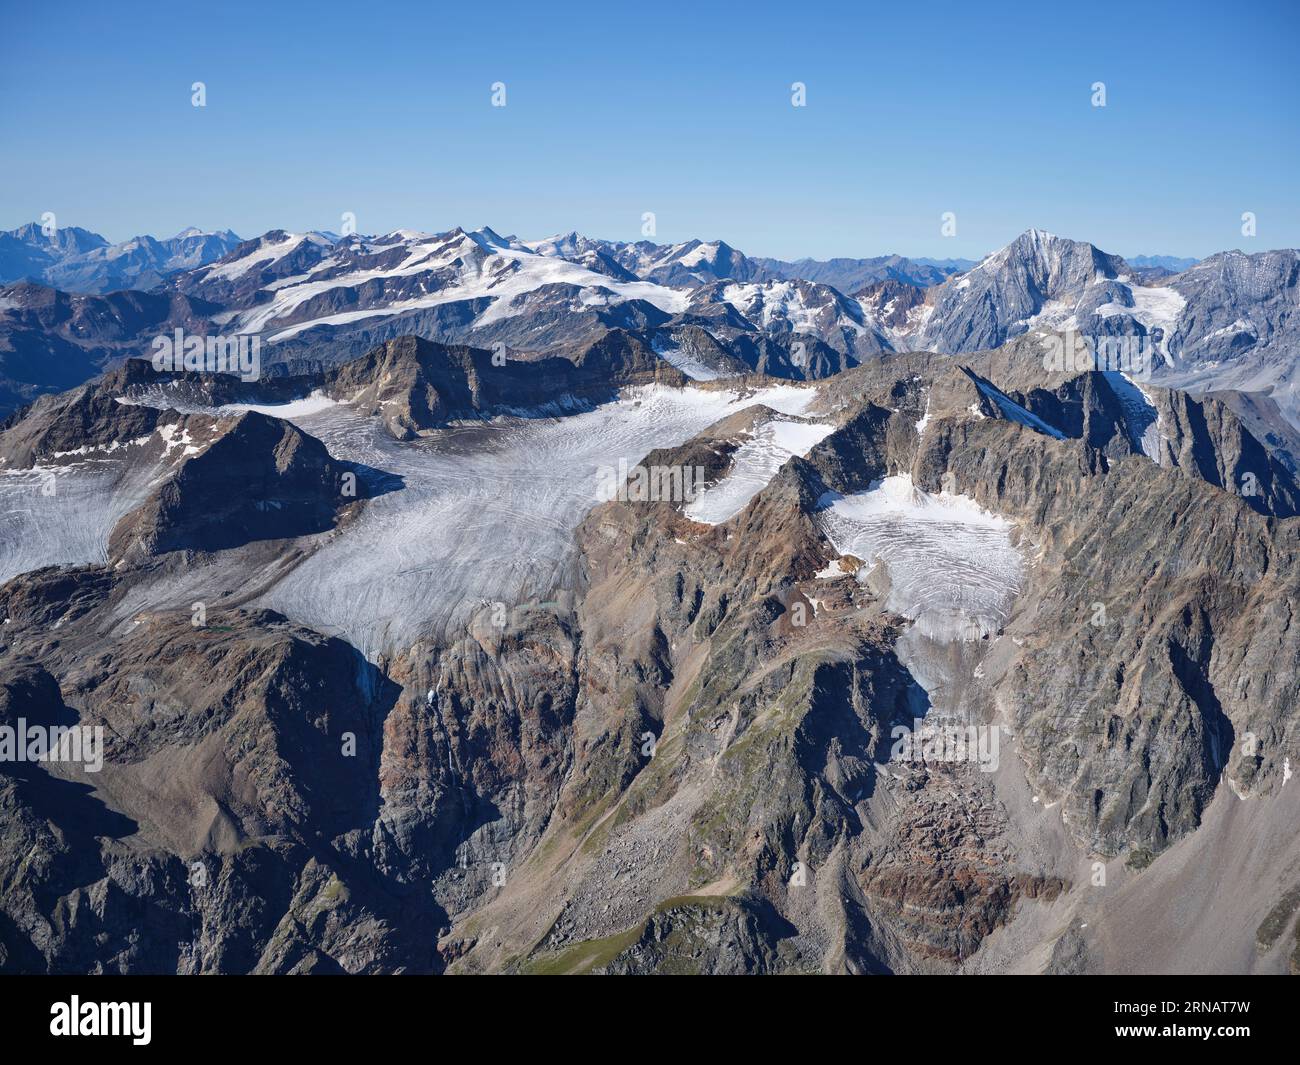 VUE AÉRIENNE. Le Schildspitze (premier plan, à droite), un sommet de 3461 mètres dans les Alpes Ortler. LAAS, province de Bolzano, Trentin-Haut-Adige, Italie. Banque D'Images